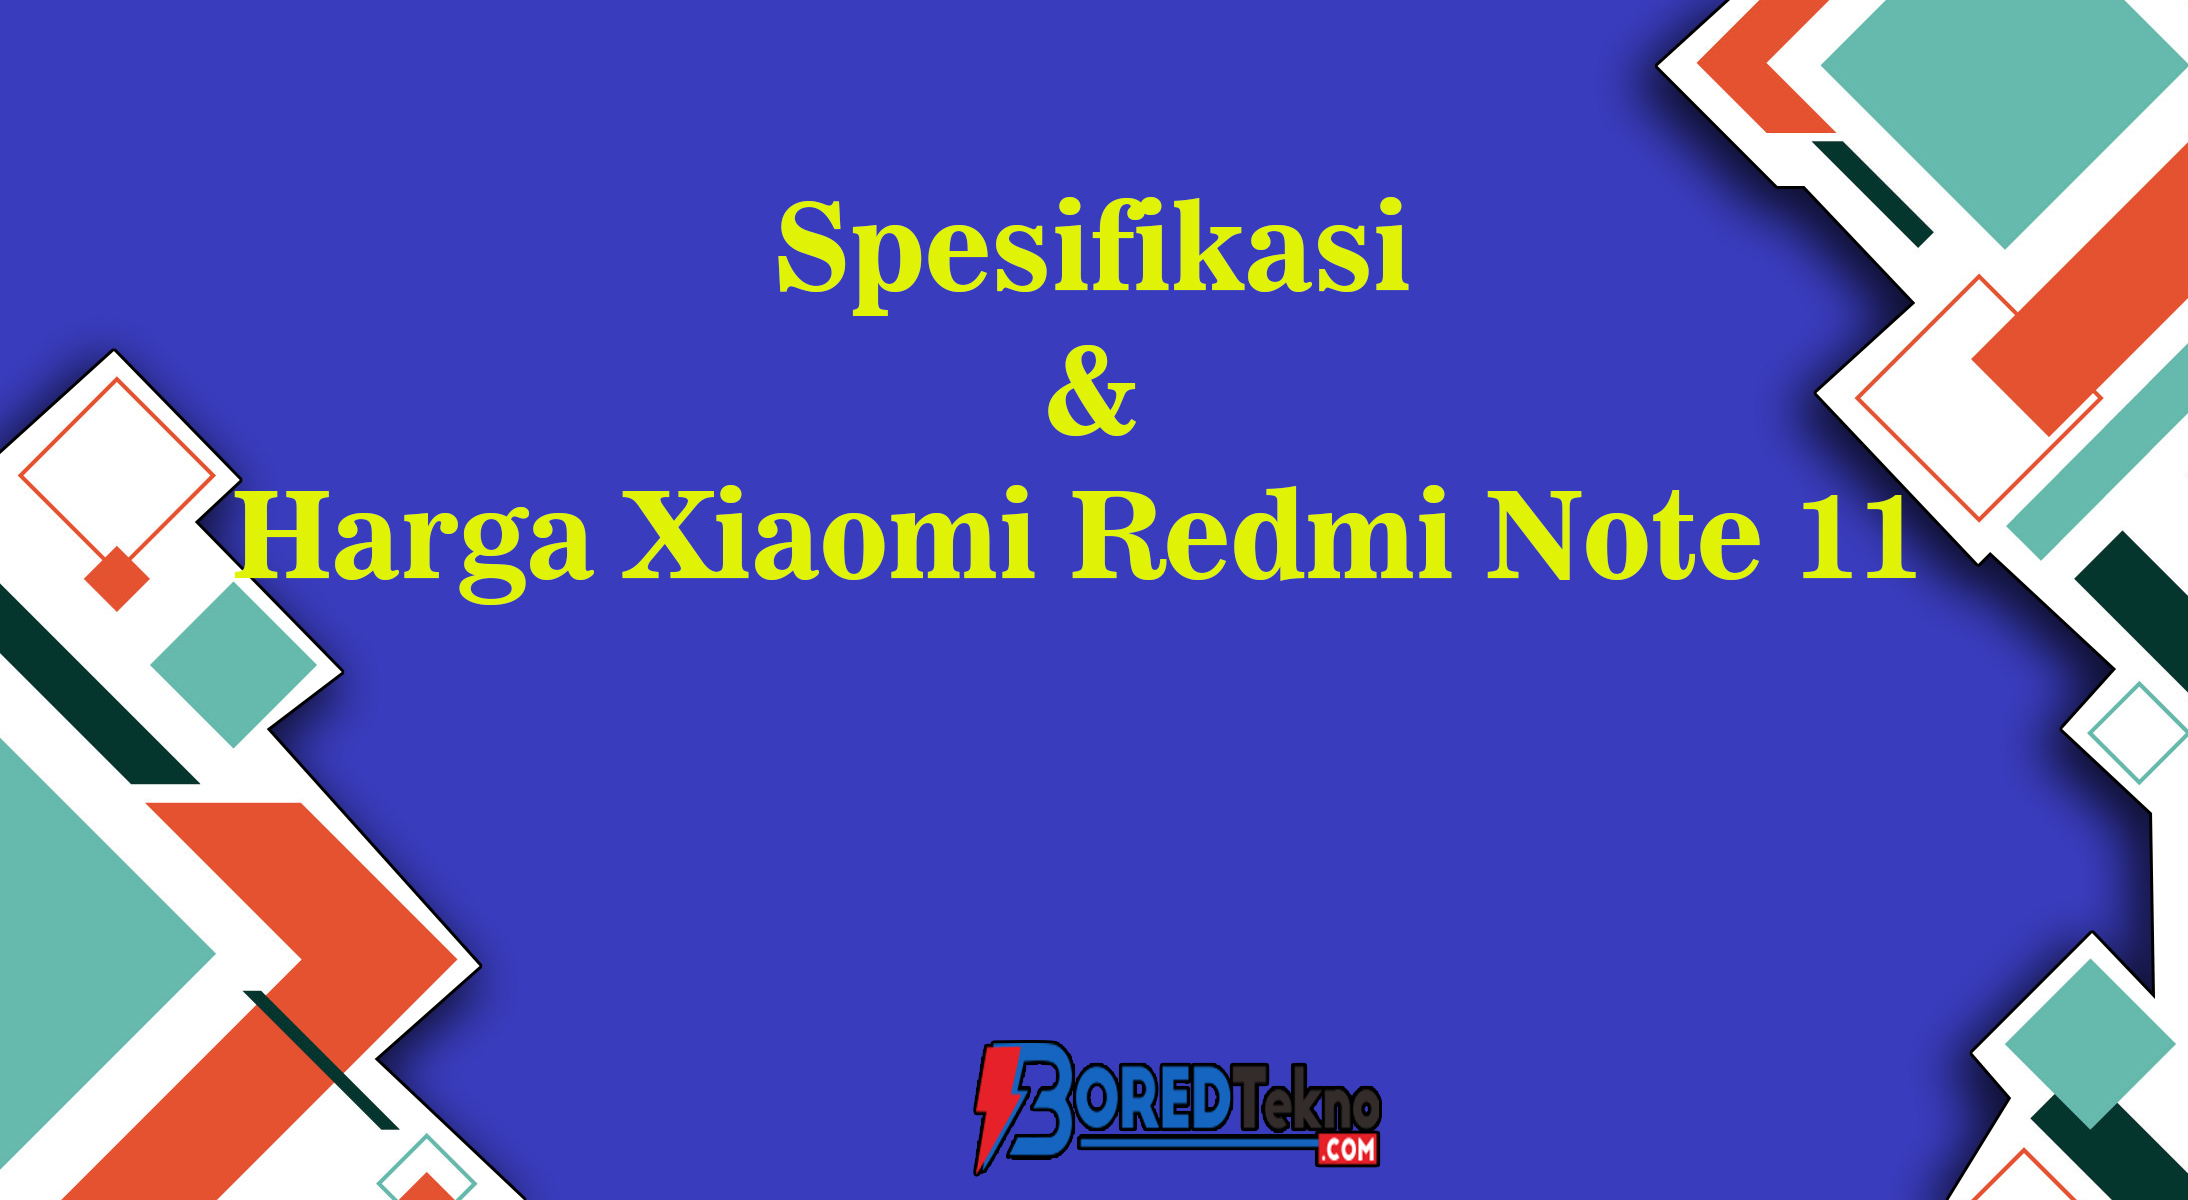 Spesifikasi & Harga Xiaomi Redmi Note 11